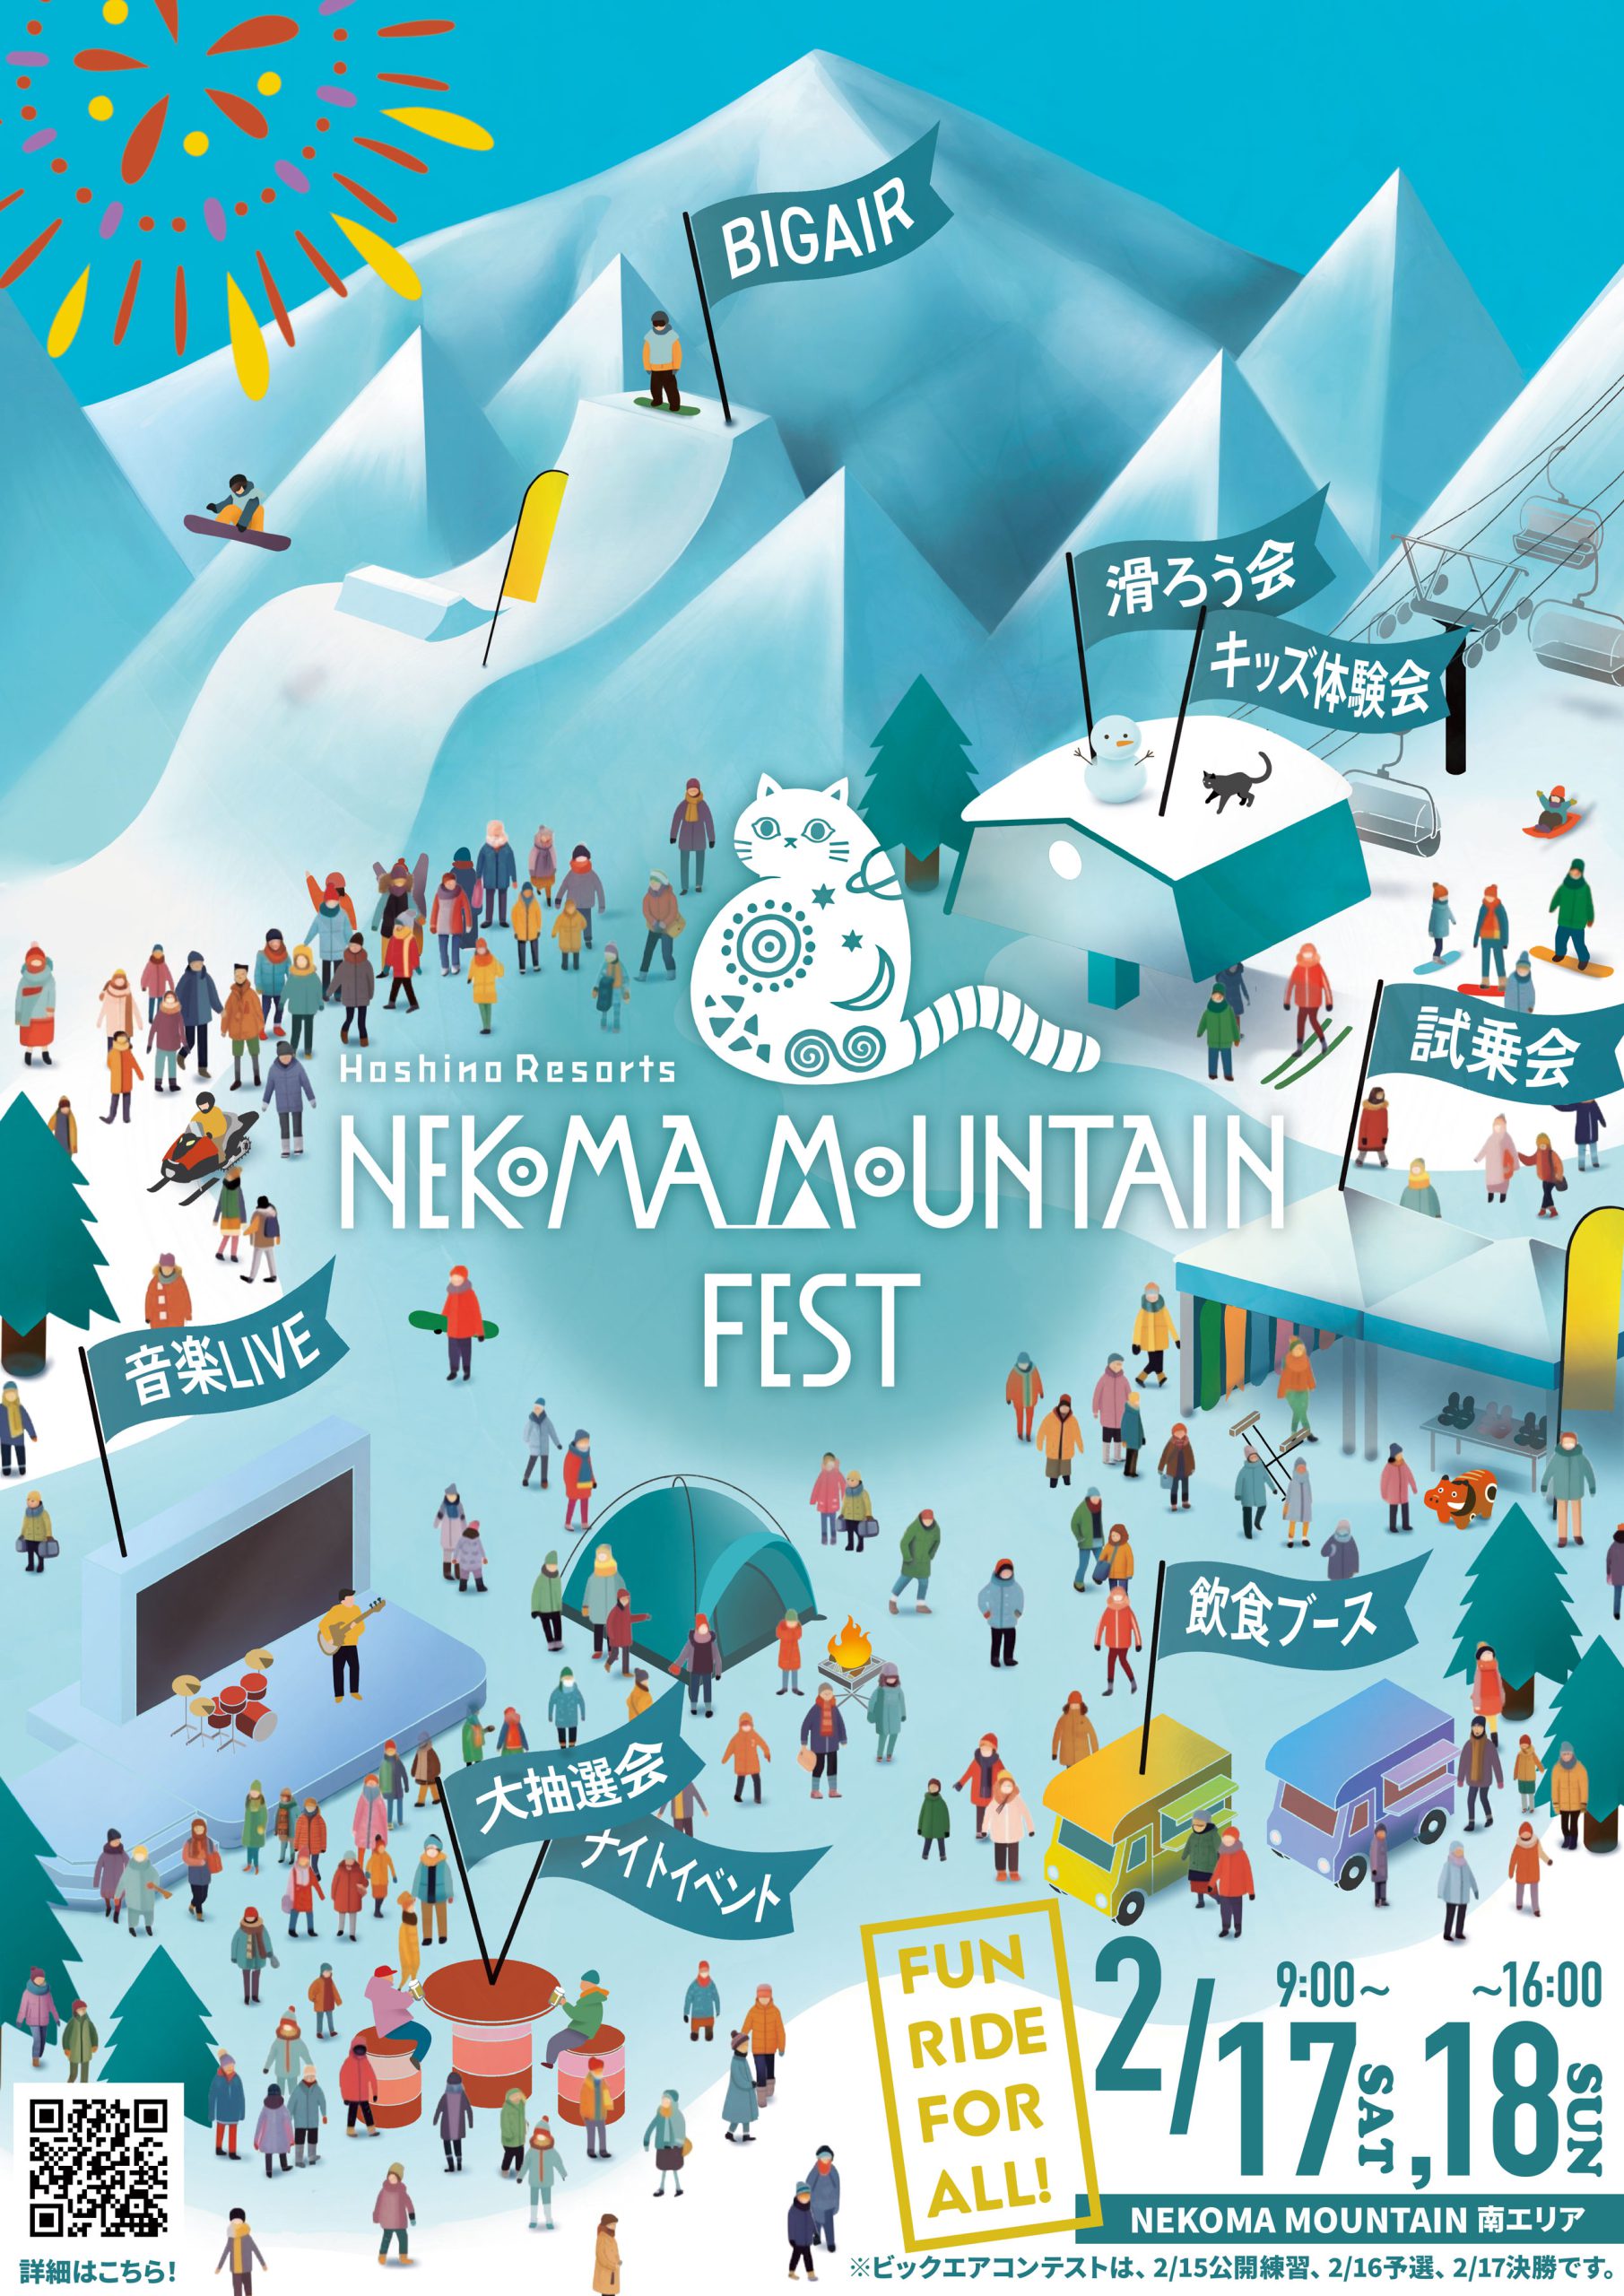 【星野リゾート ネコマ マウンテン】「NEKOMA MOUNTAIN FEST」イベント出展のご案内